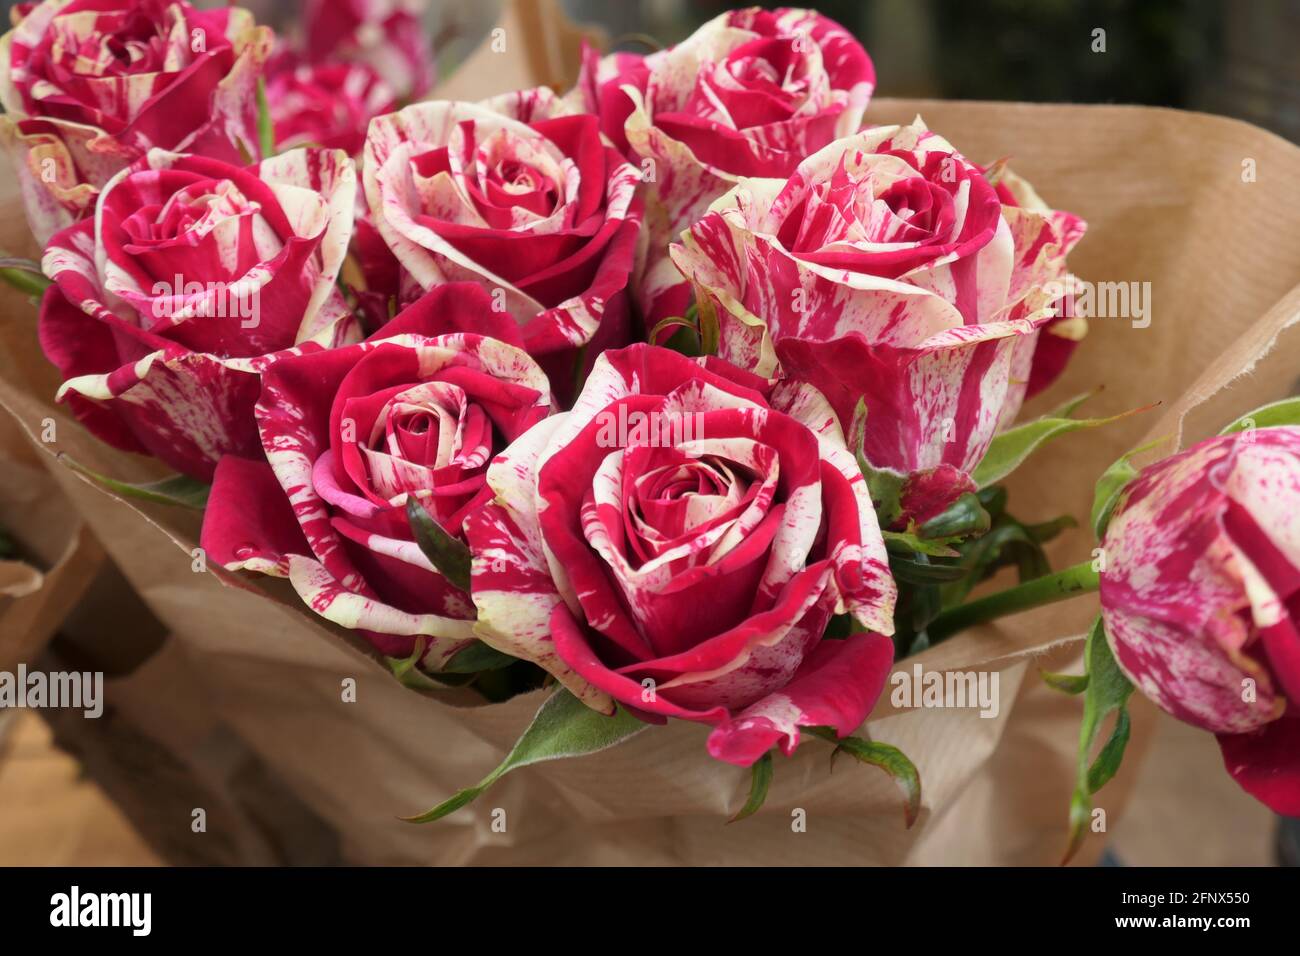 Schöner Strauß frischer Rosen / Beautiful Roses Foto Stock